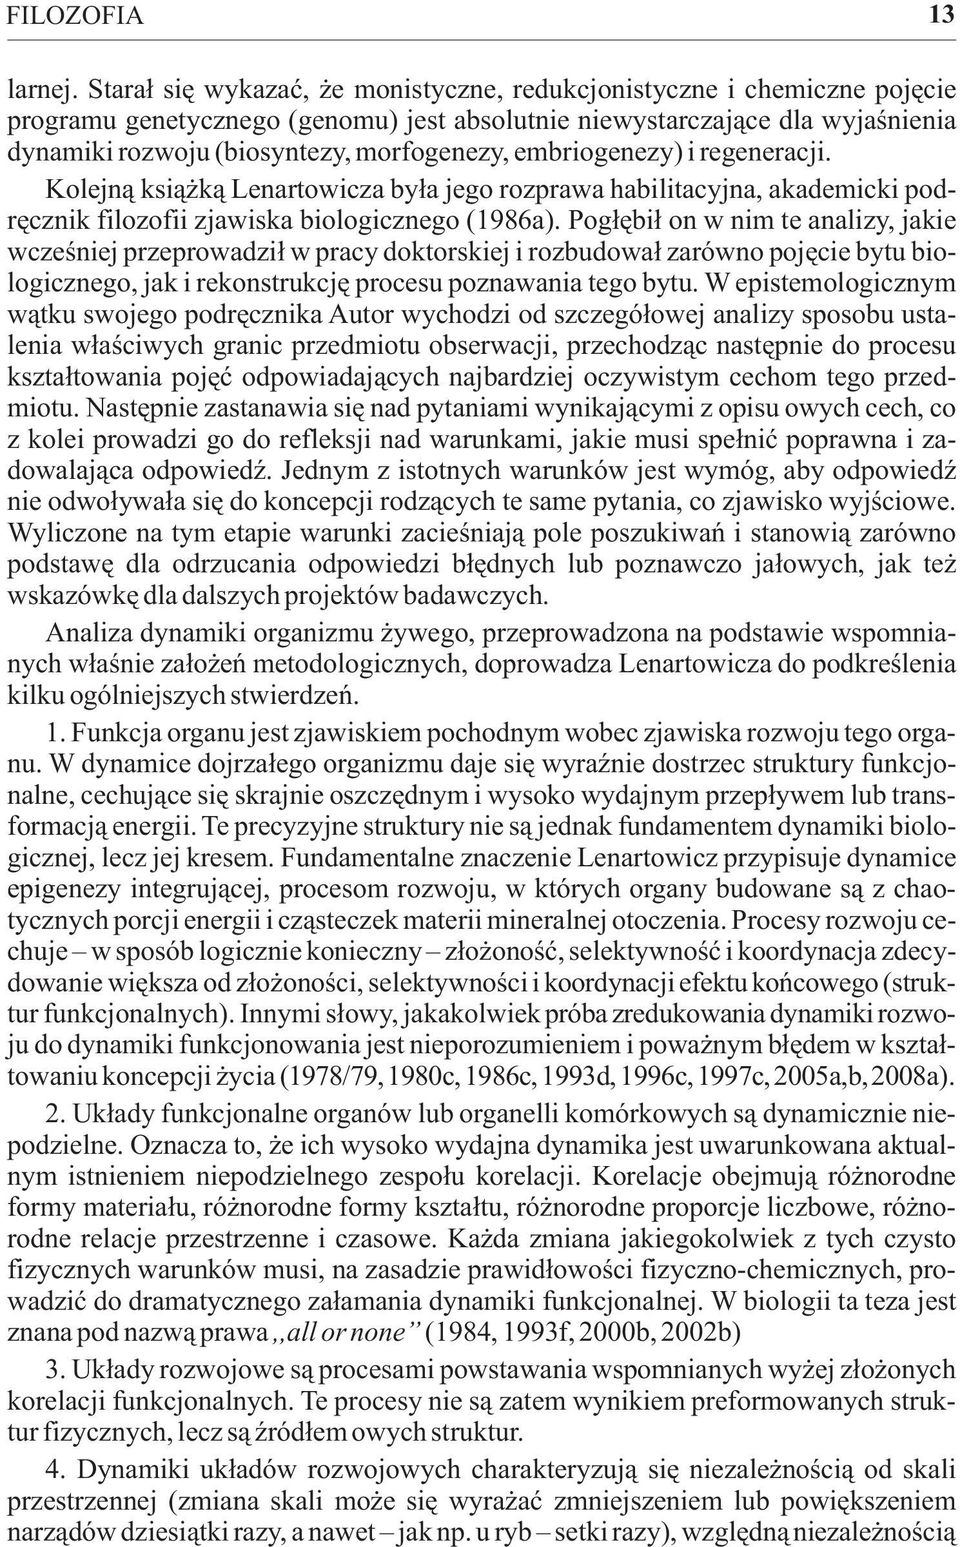 embriogenezy) i regeneracji. Kolejn¹ ksi¹ k¹ Lenartowicza by³a jego rozprawa habilitacyjna, akademicki podrêcznik filozofii zjawiska biologicznego (1986a).